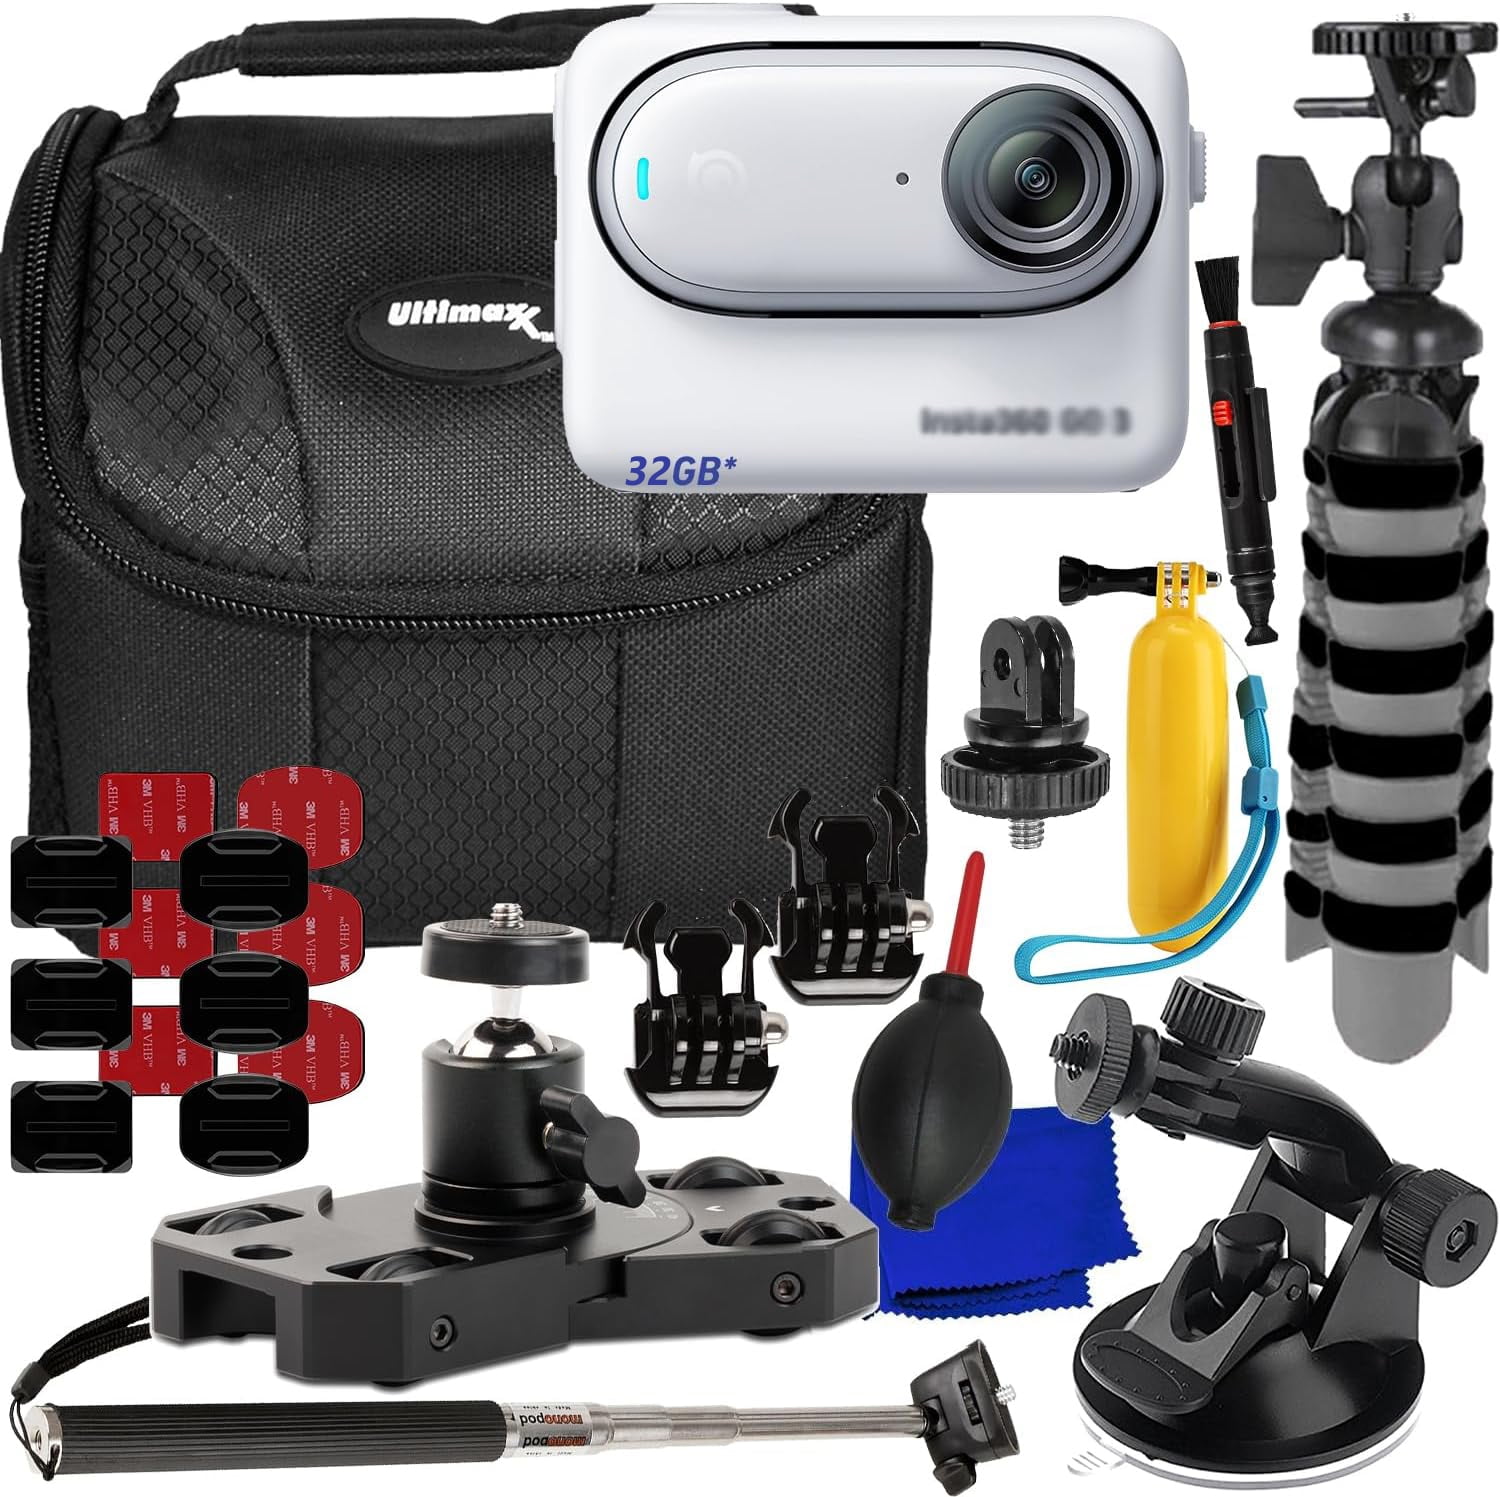 Insta360 Go 3 Action Camera Premium Kit (128GB)